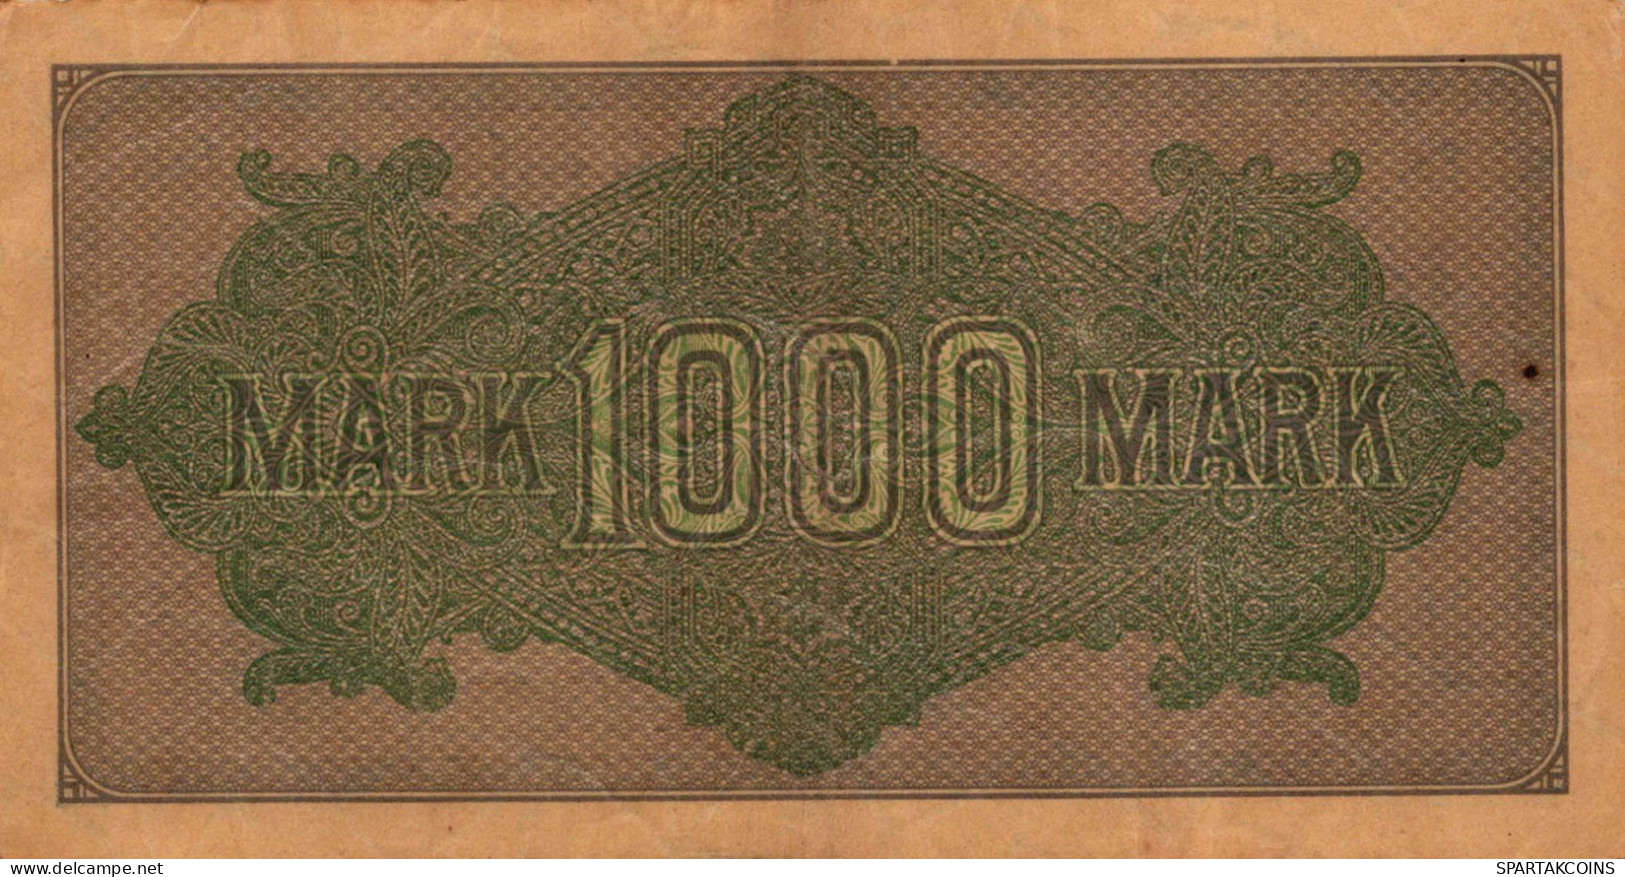 1000 MARK 1922 Stadt BERLIN DEUTSCHLAND Papiergeld Banknote #PL444 - Lokale Ausgaben